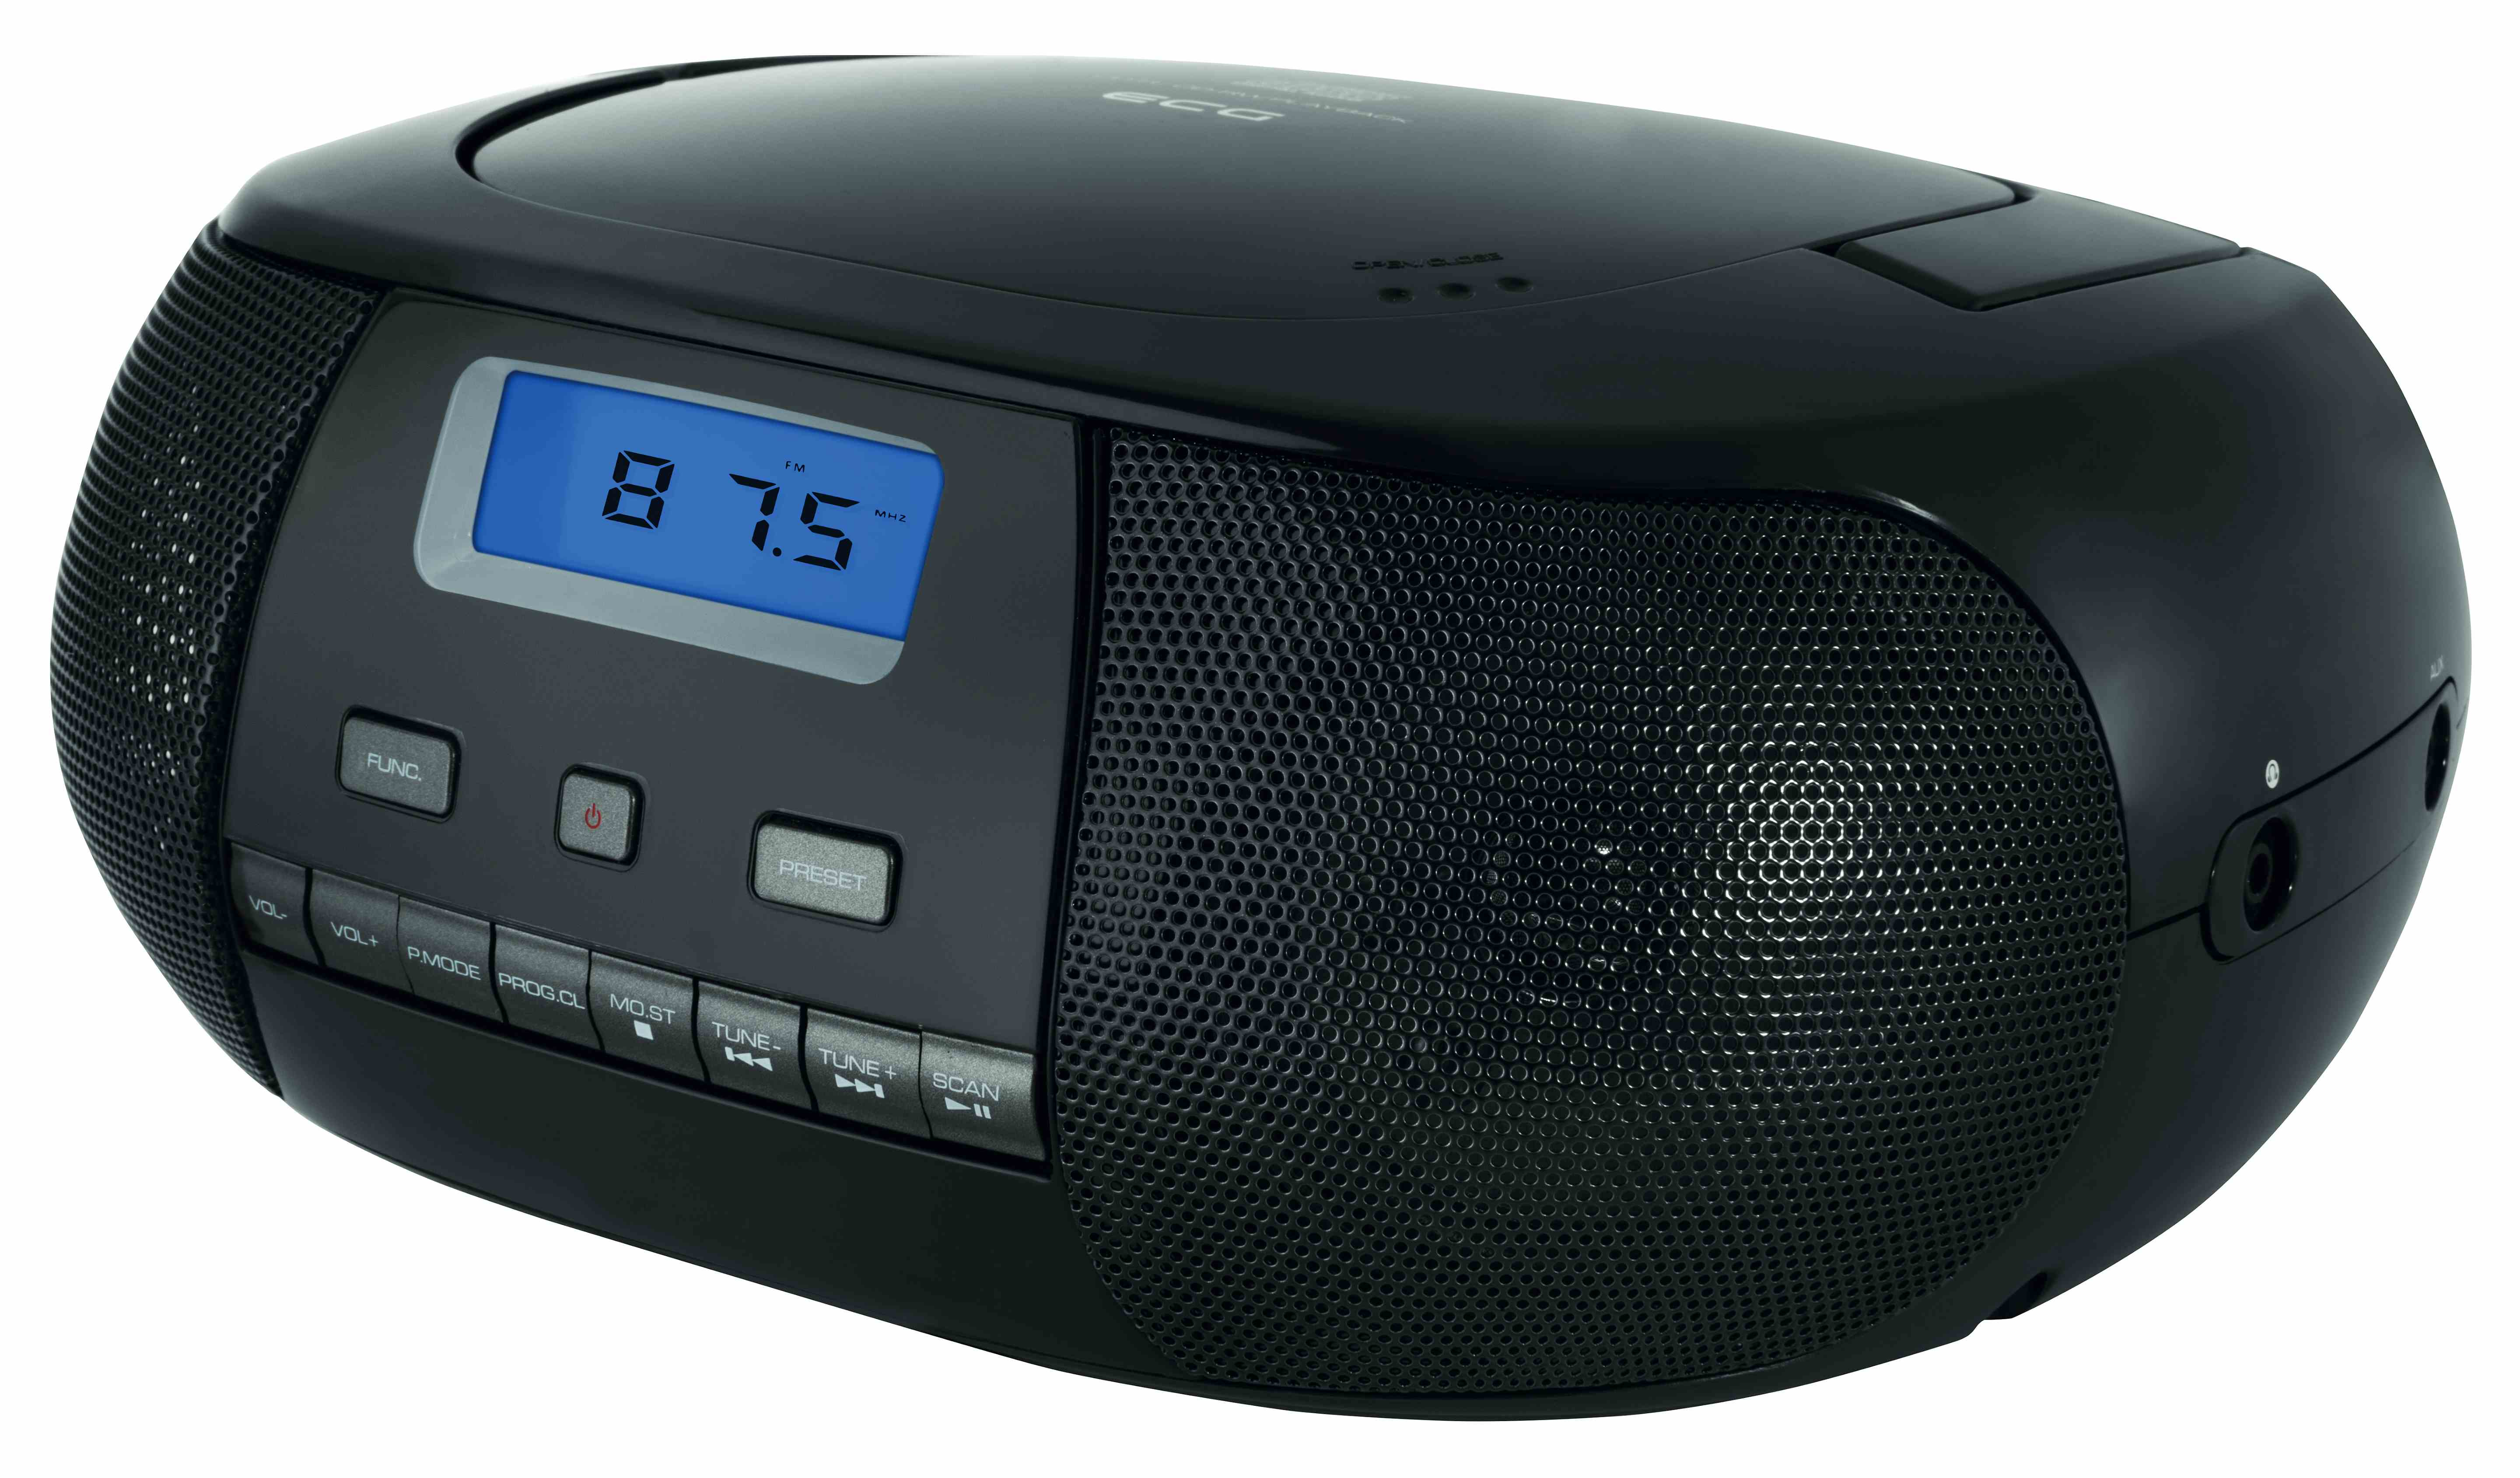 | Tuner FM | PLL CDR 500 W × Portable black CD-Radio 1 Player | Black | AUX 2 CD | ECG